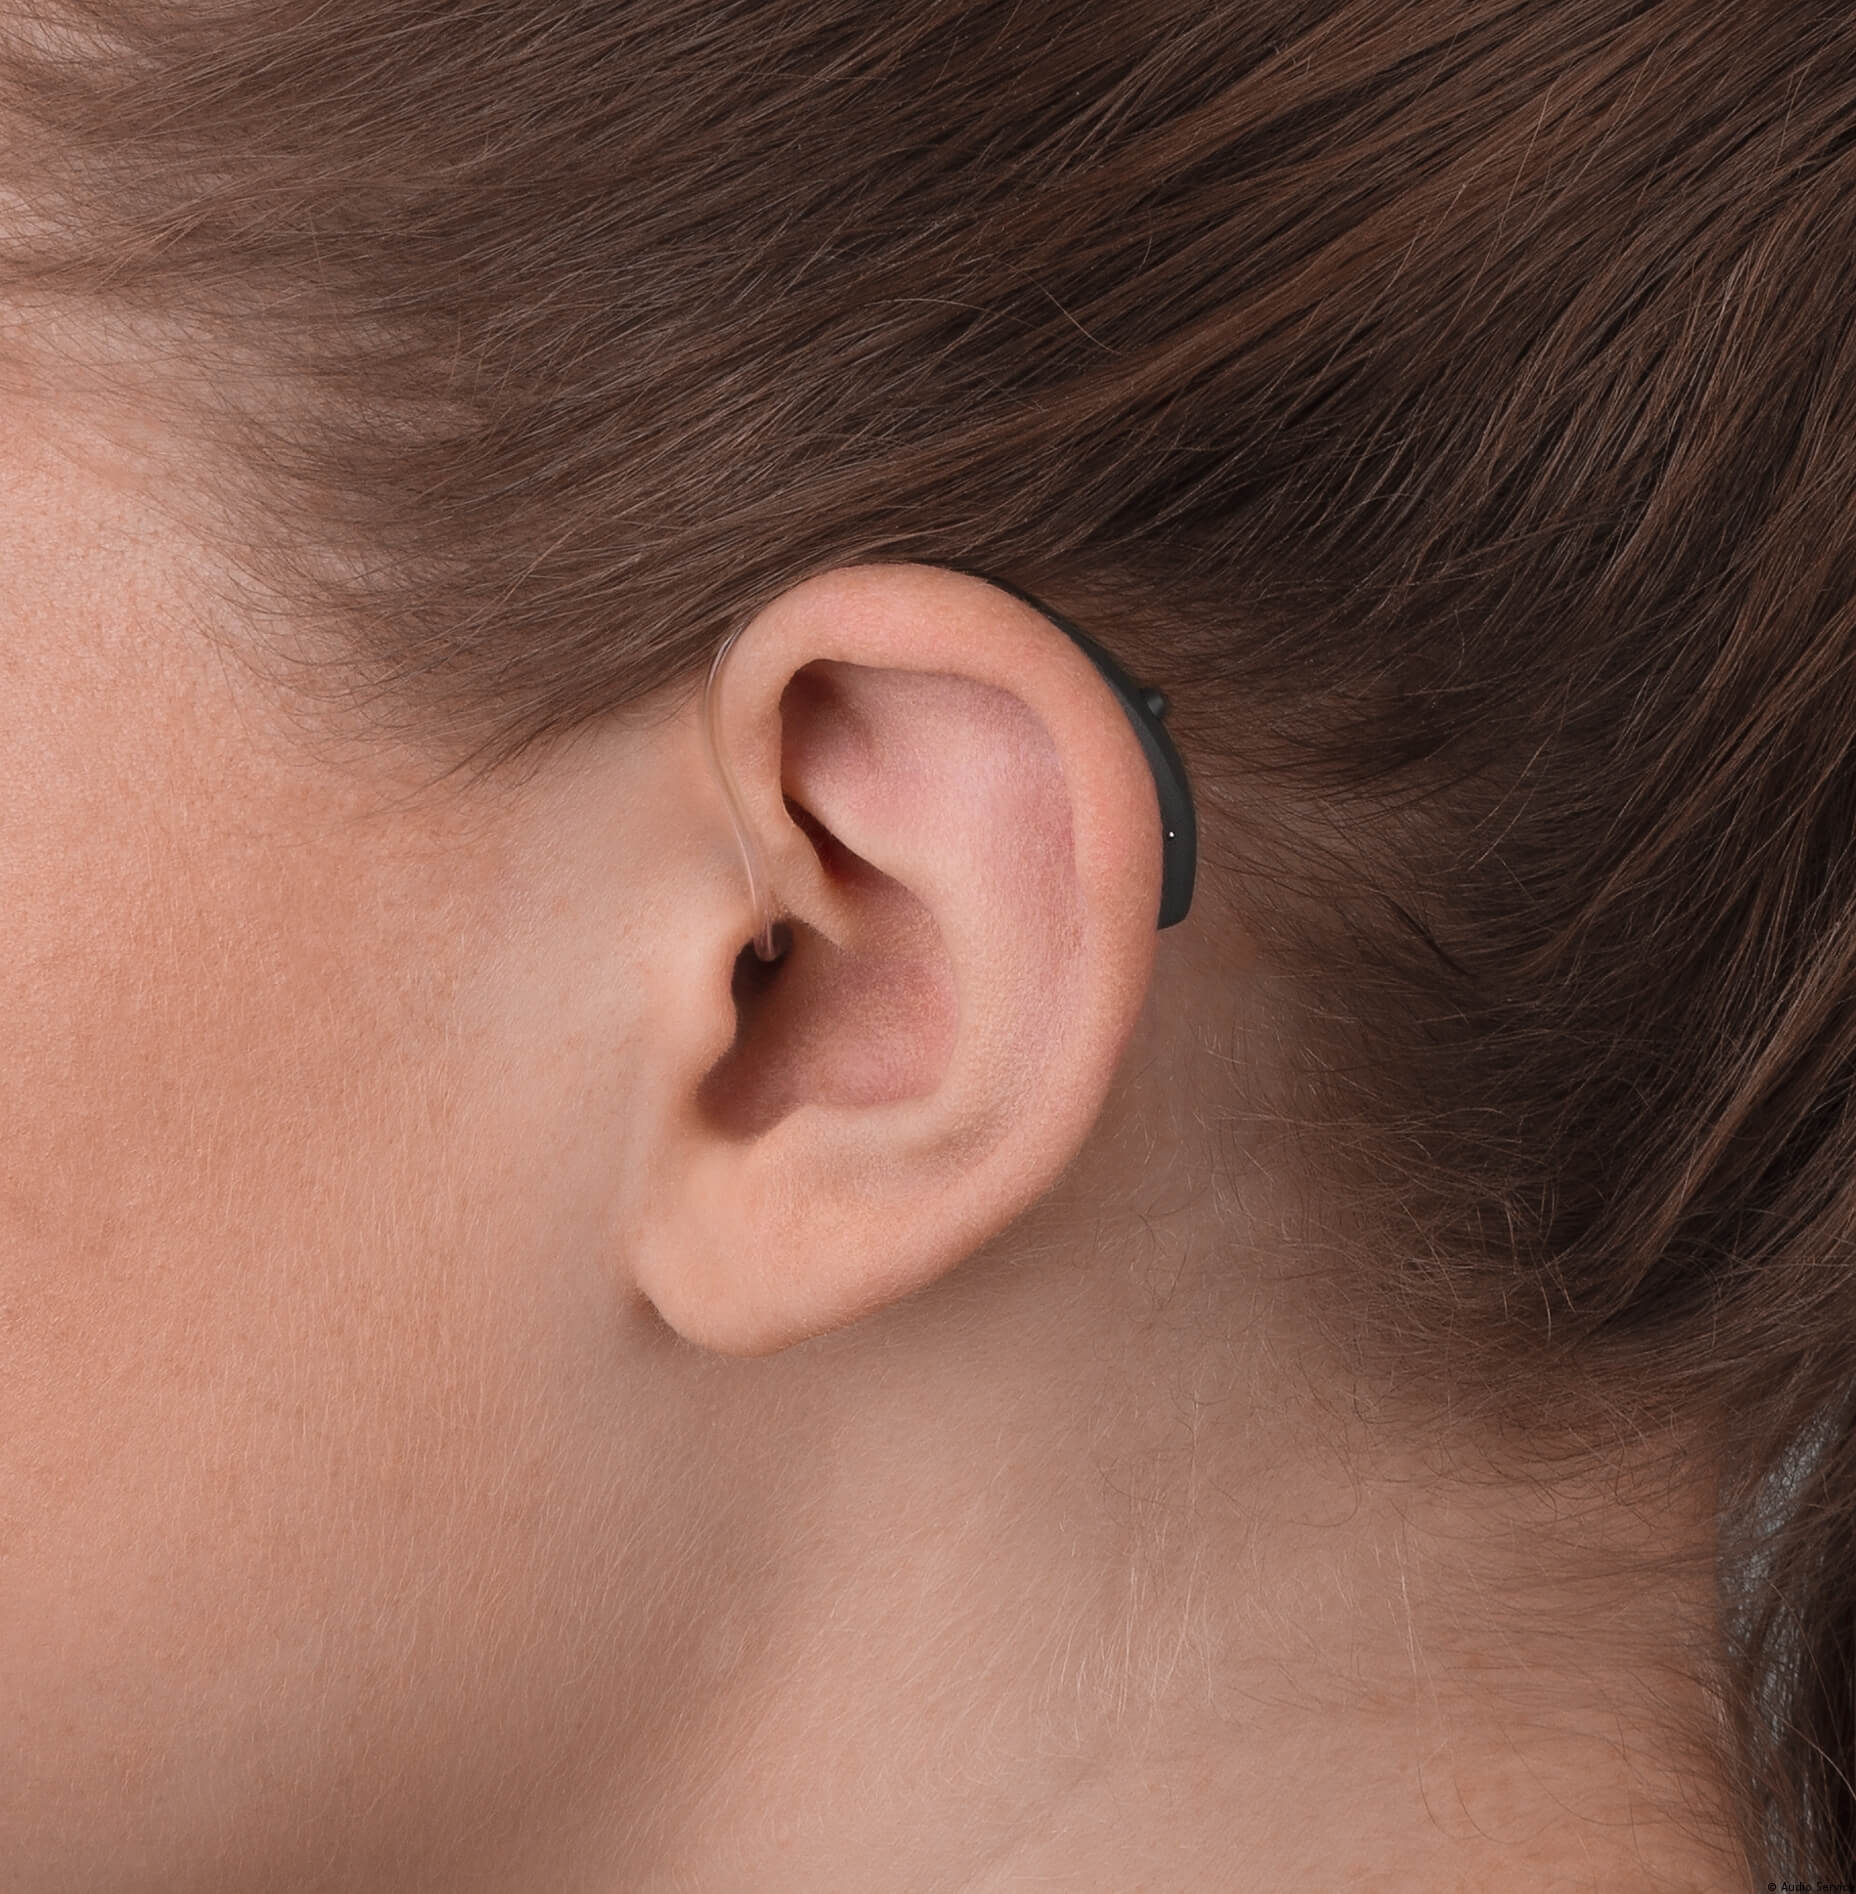 Hörgerät hinter dem Ohr